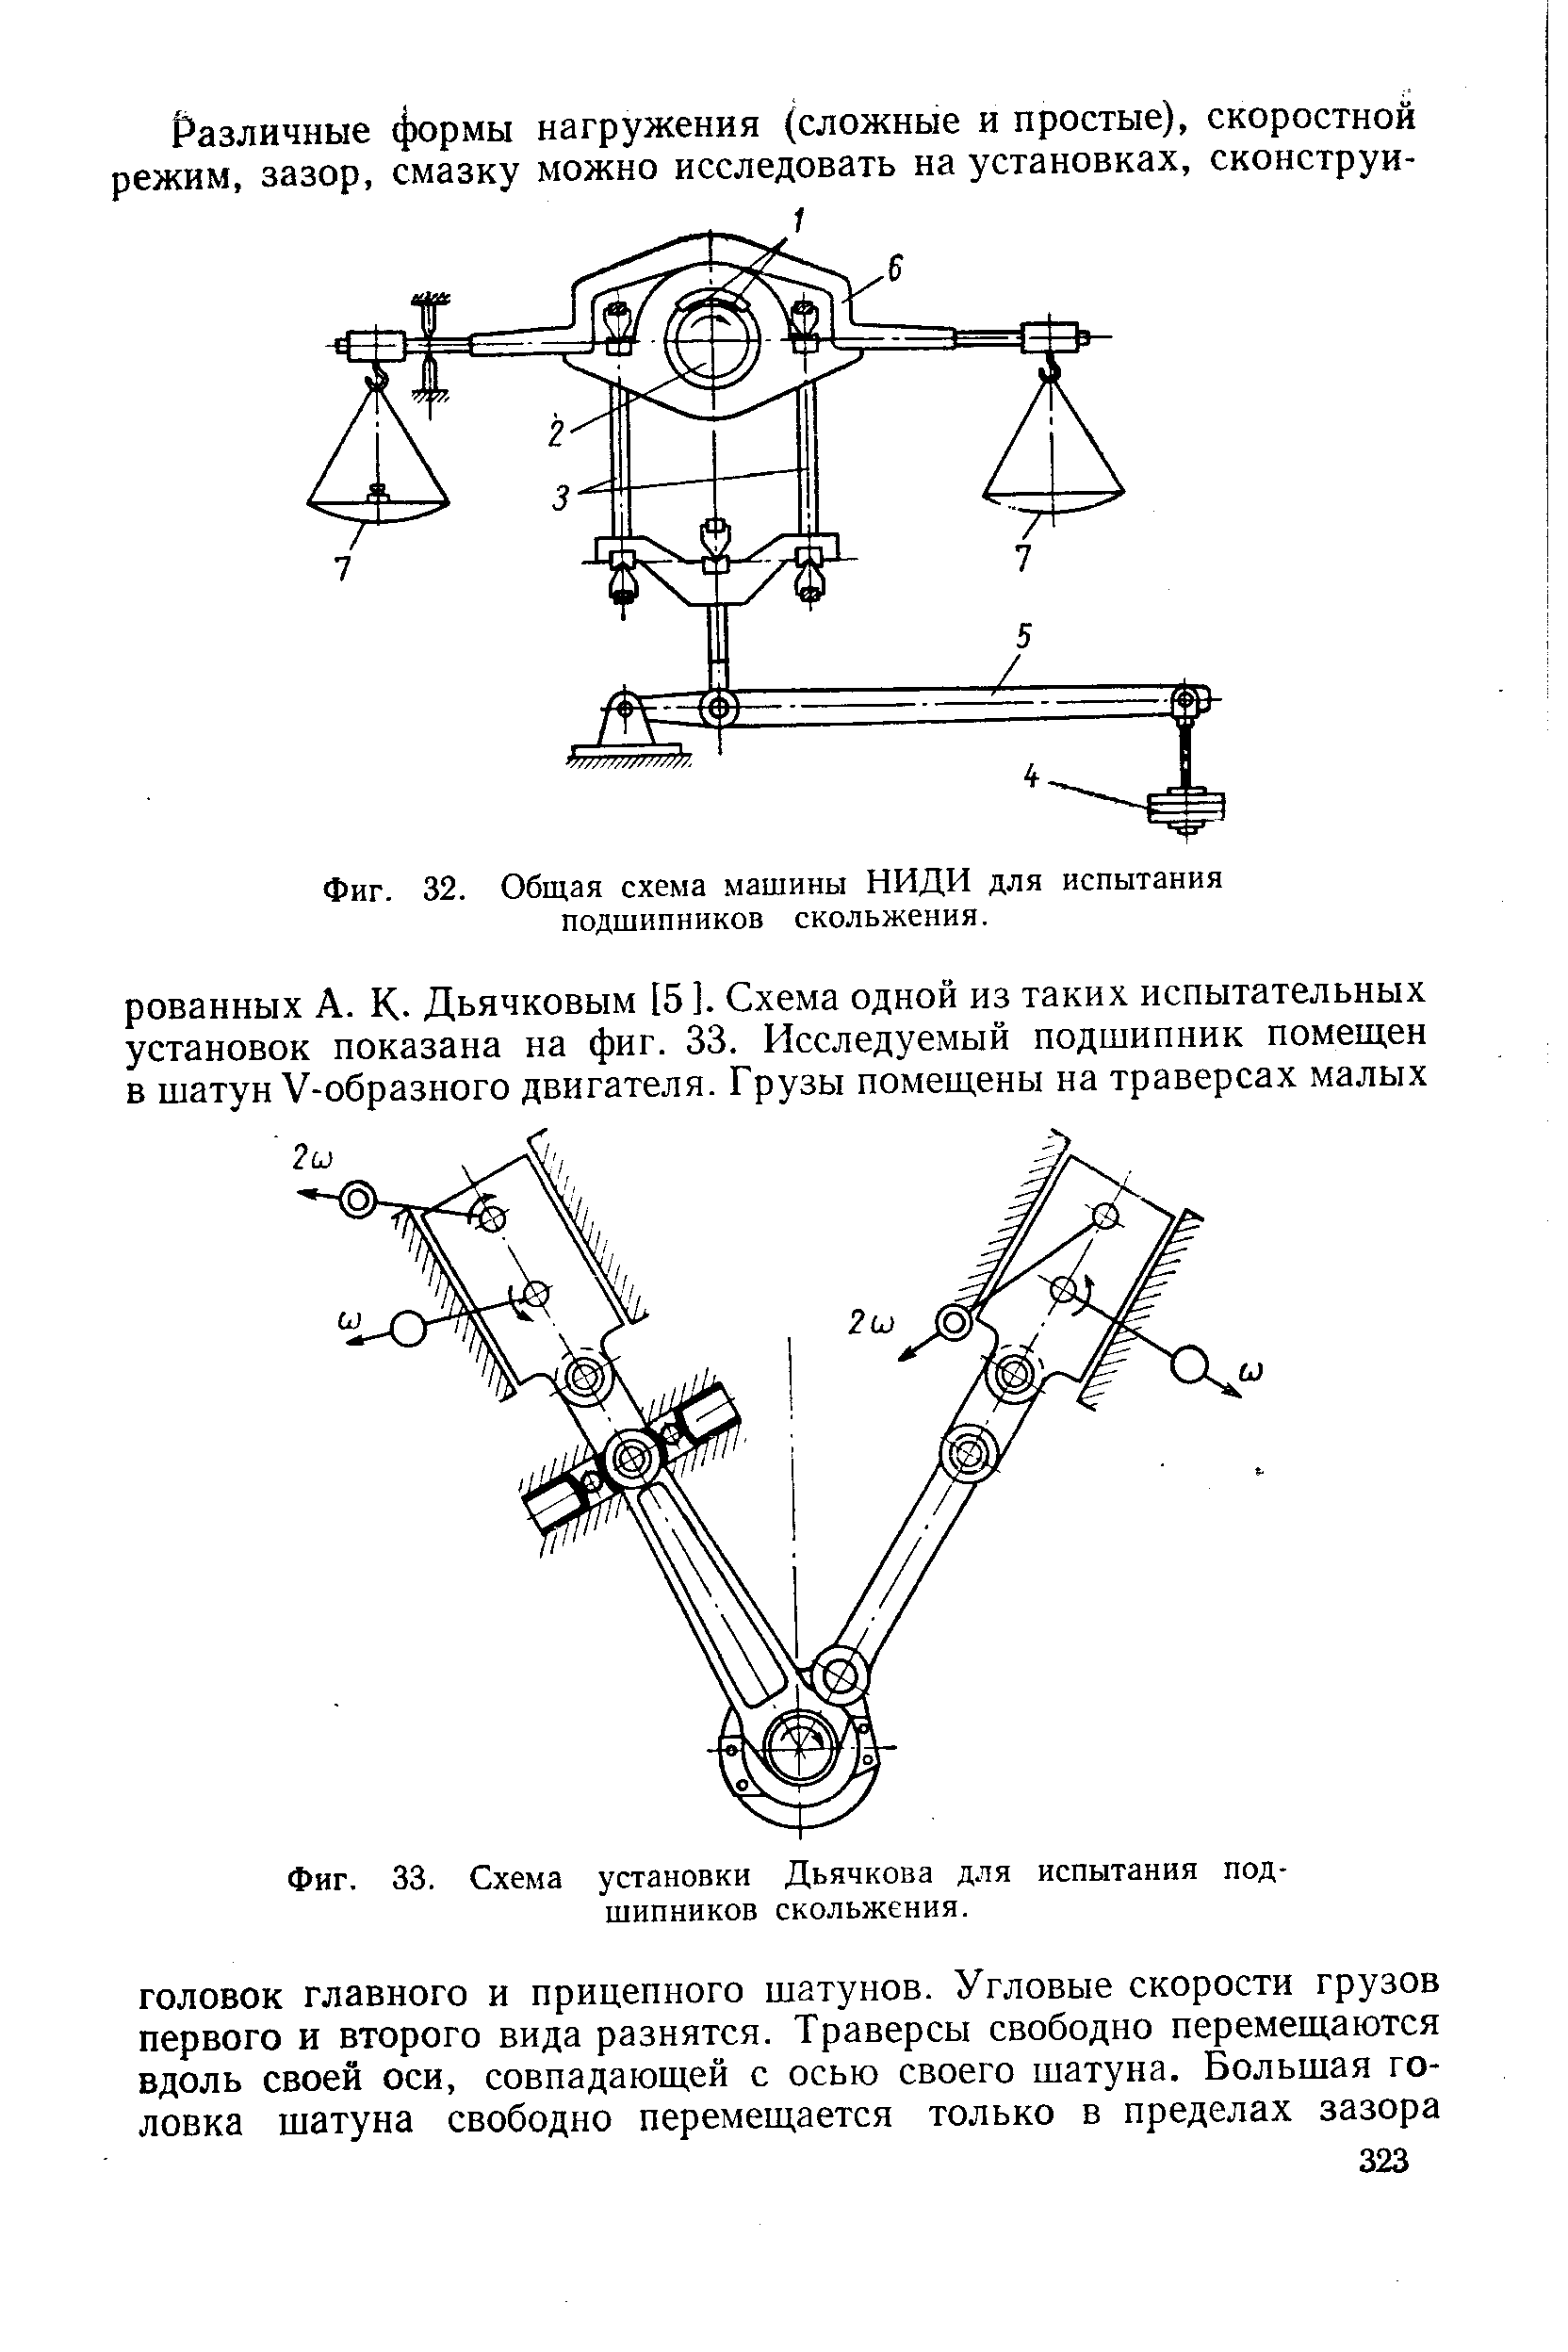 Фиг. 33. Схема установки Дьячкова для испытания подшипников скольжения.
